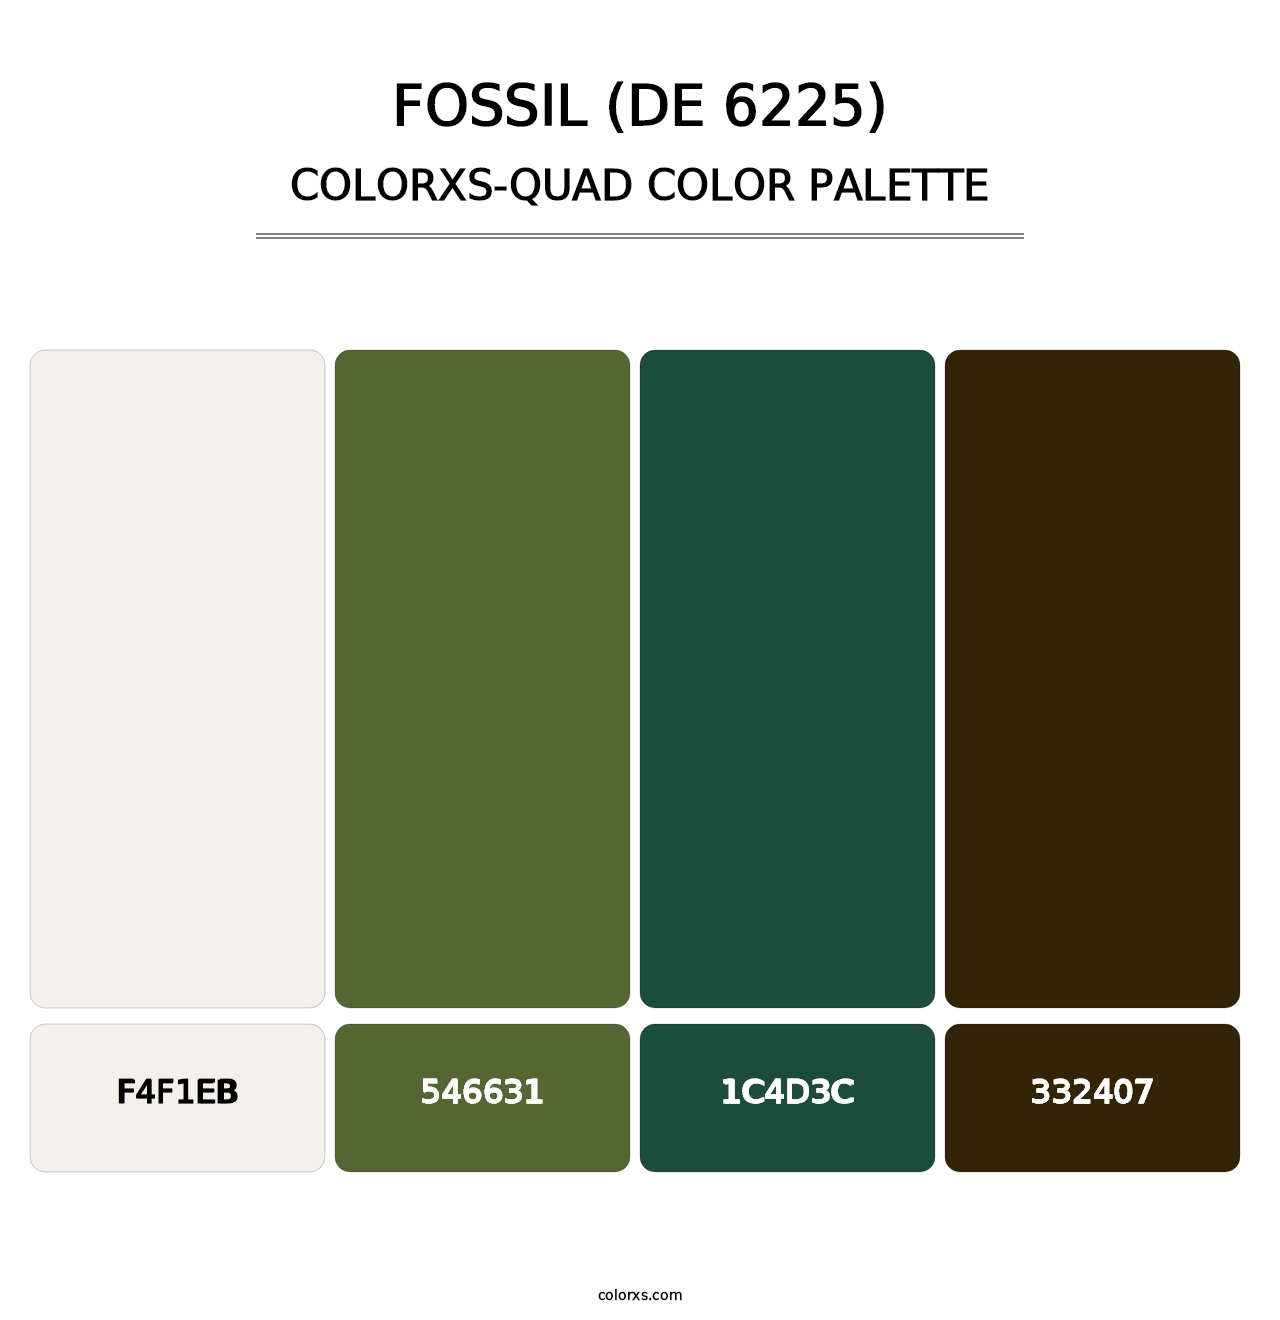 Fossil (DE 6225) - Colorxs Quad Palette